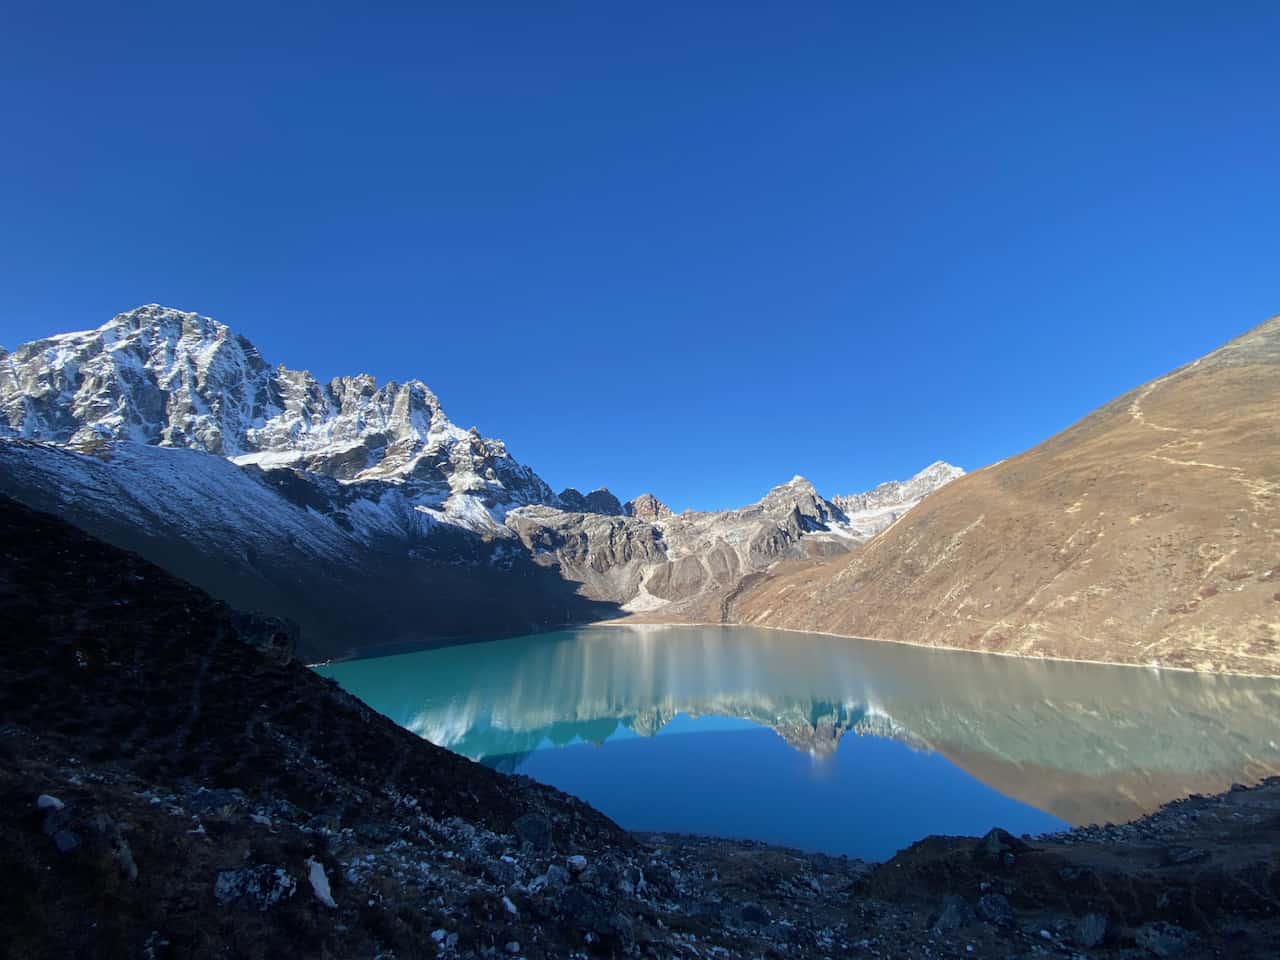 Goyko Lake, Everest, morning light